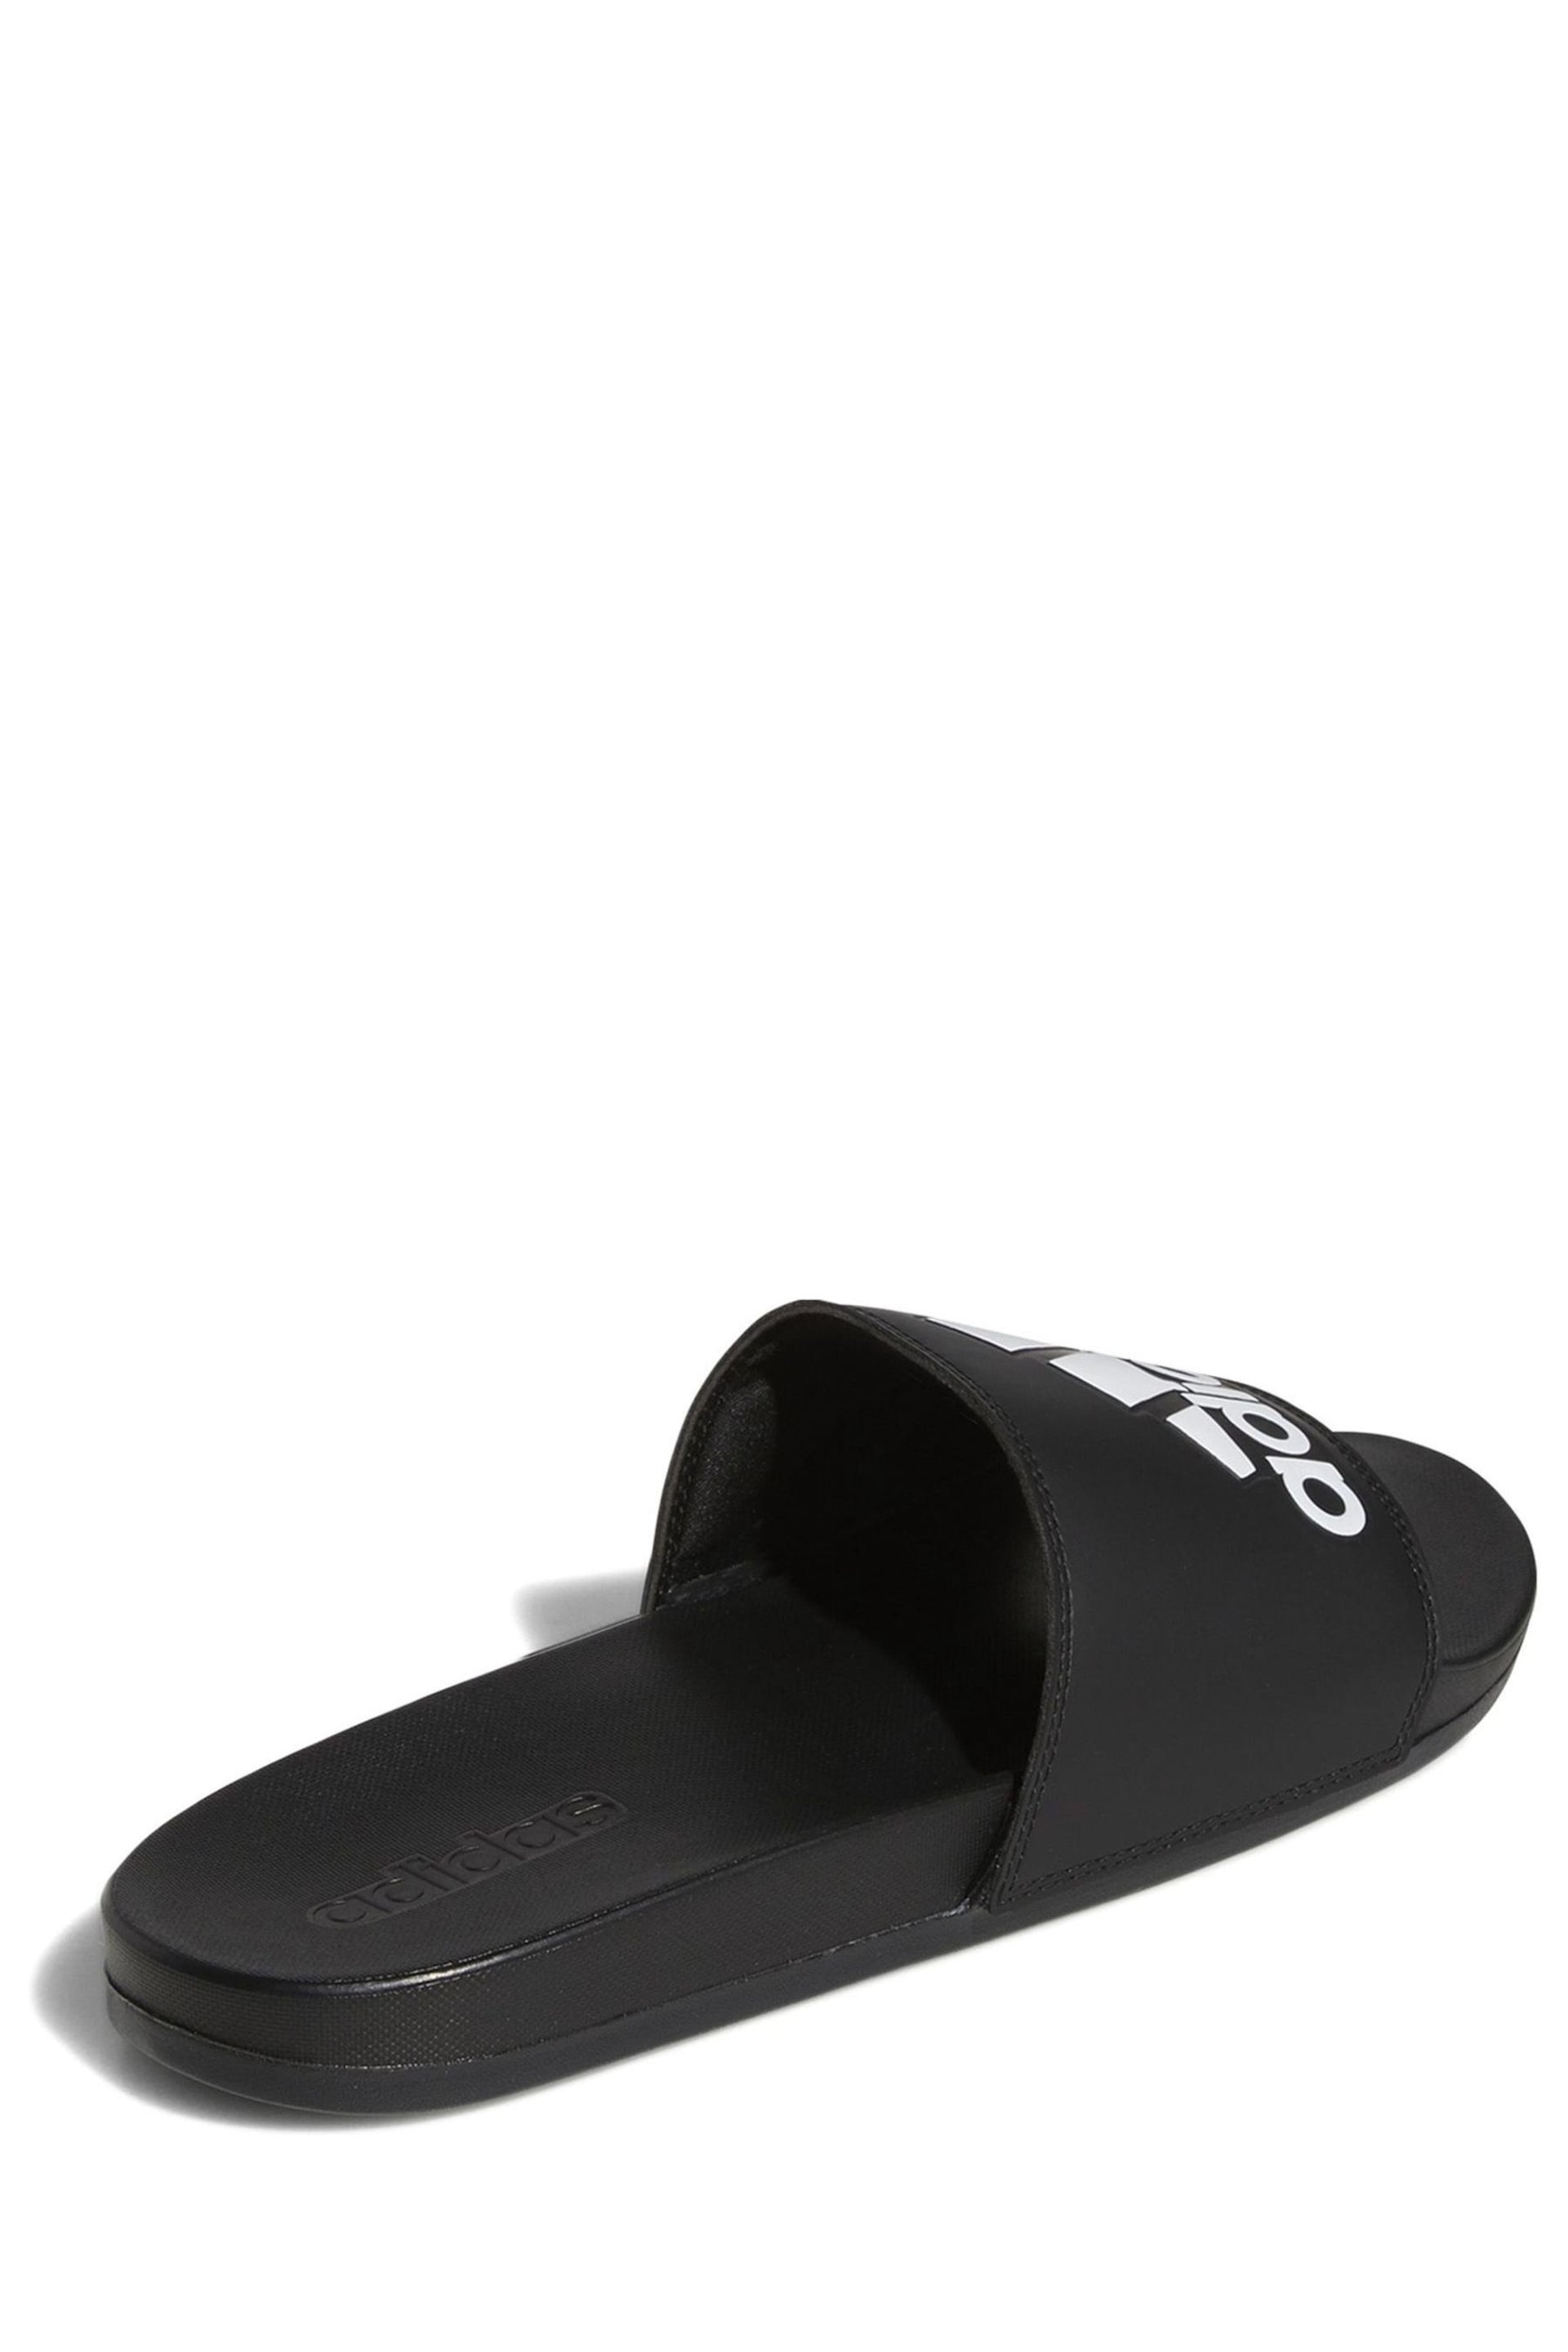 adidas Dark Black Sportswear Adilette Comfort Slides - Image 4 of 9